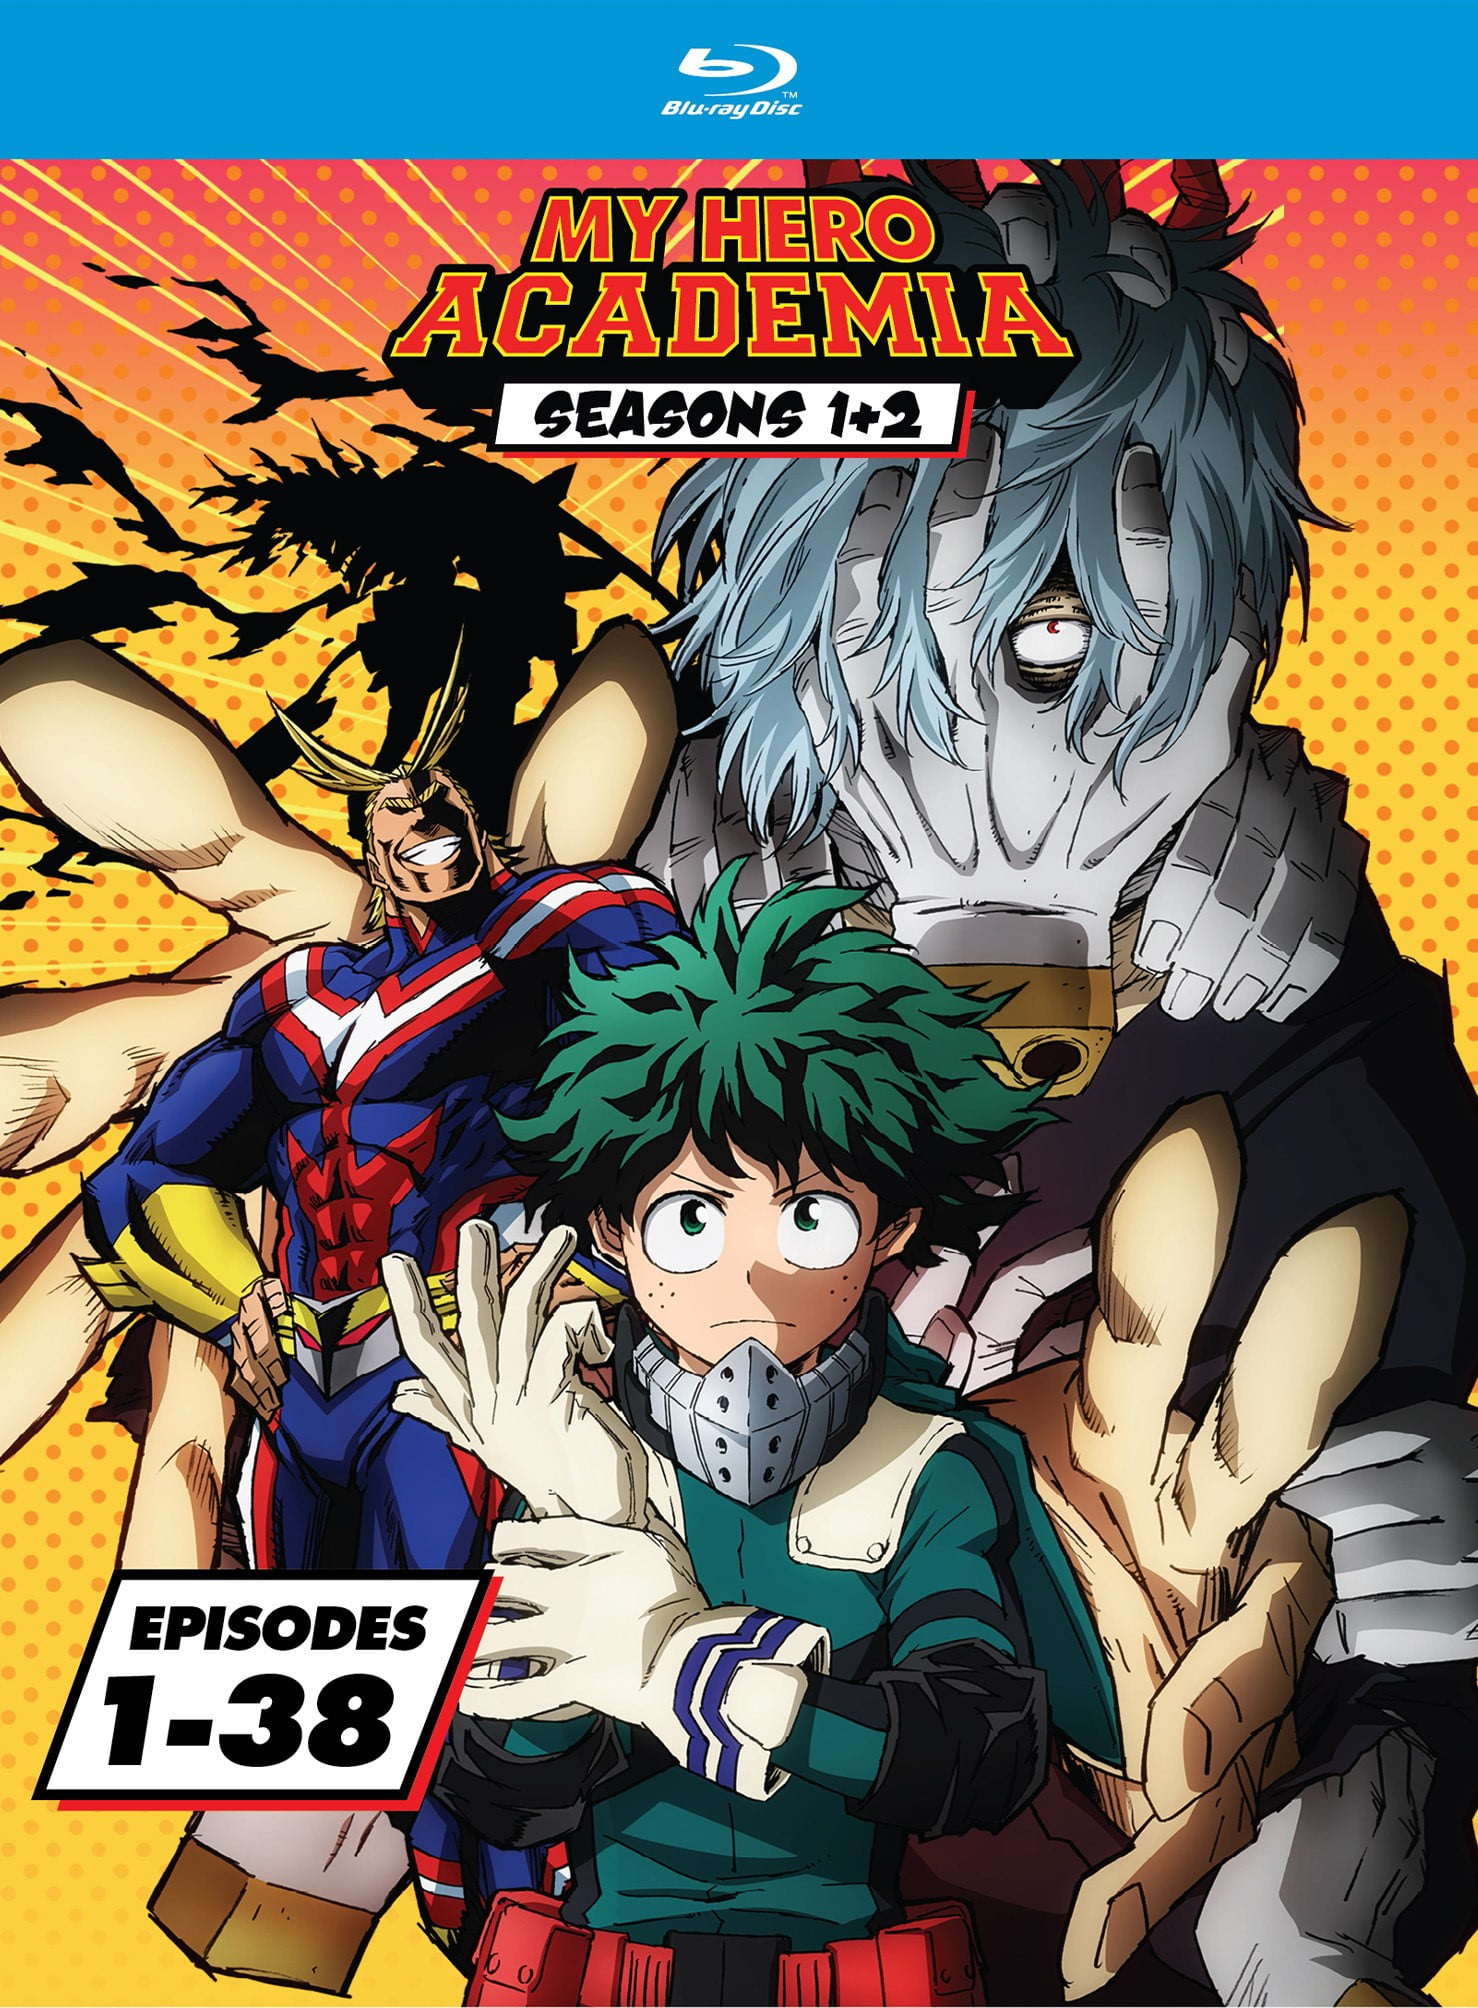 My Hero Academia  Manga  Anime TV Show Poster  Print The Heroes   Walmartcom